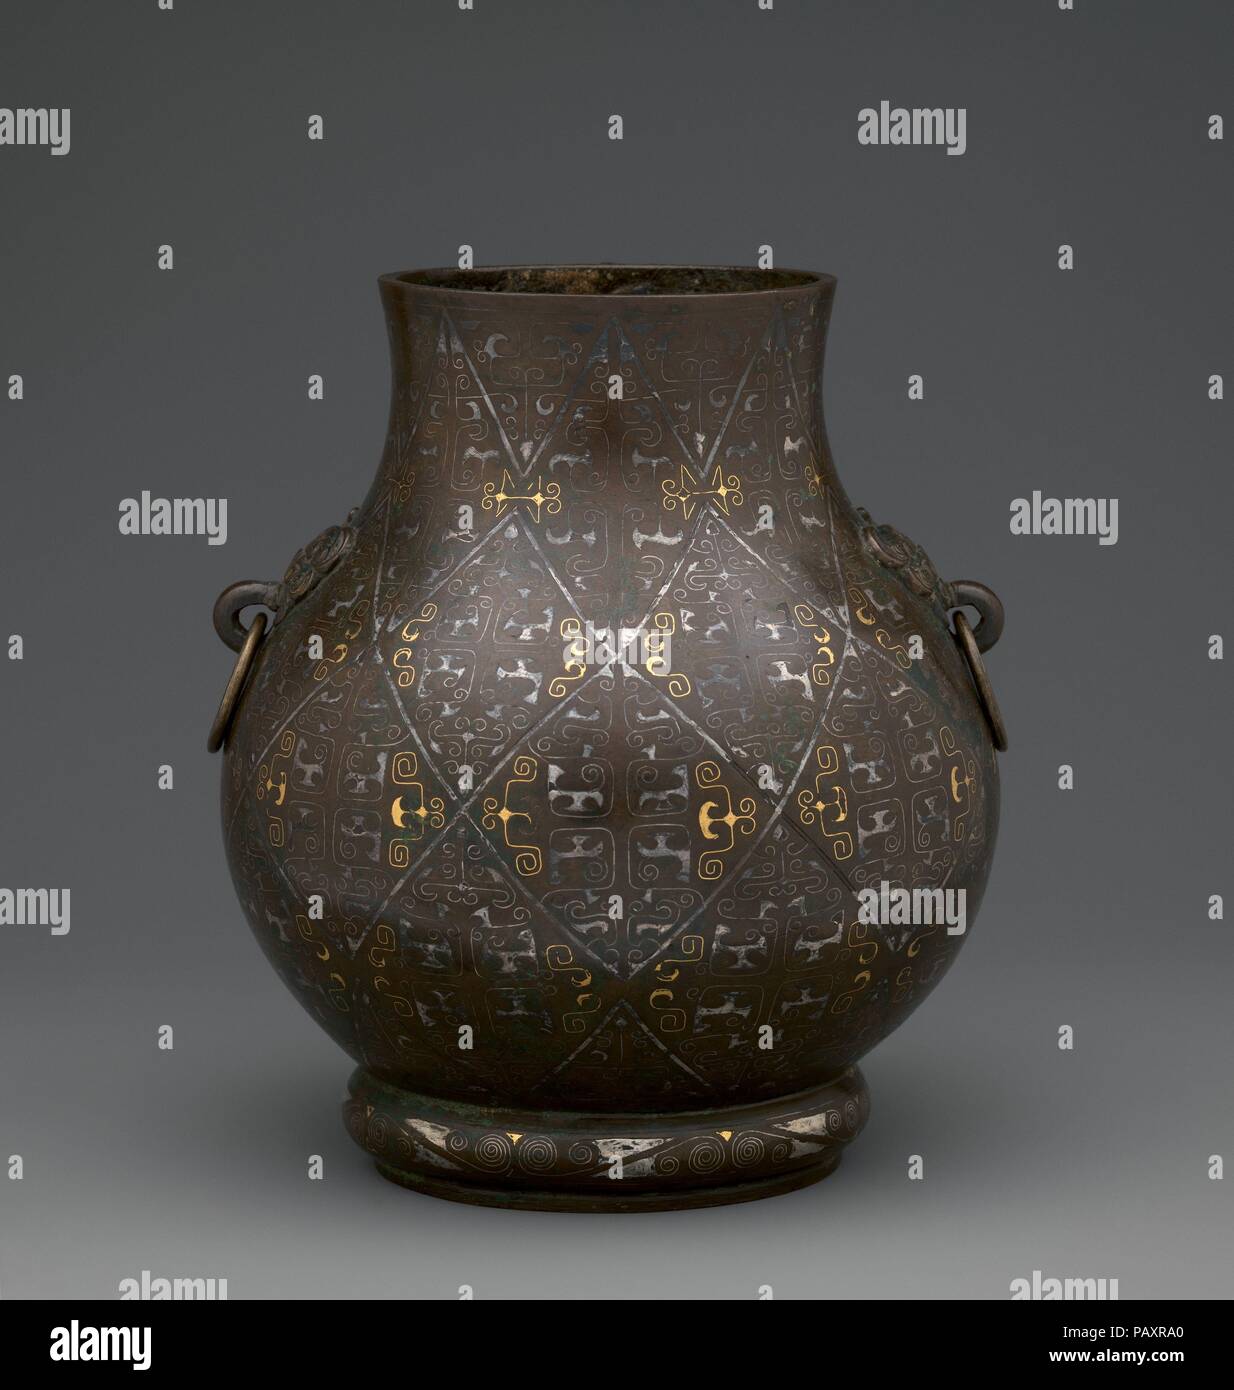 Archaisch-Stil Vase (hu). Kultur: China. Abmessungen: H. 7 1/4 in. (18,4  cm); Durchm. 6 in. (15,2 cm) Durchm. Von rim: 3 5/8 in. (9,2 cm) Durchm.  Der Fuß: 3 3/4 in. (9,5